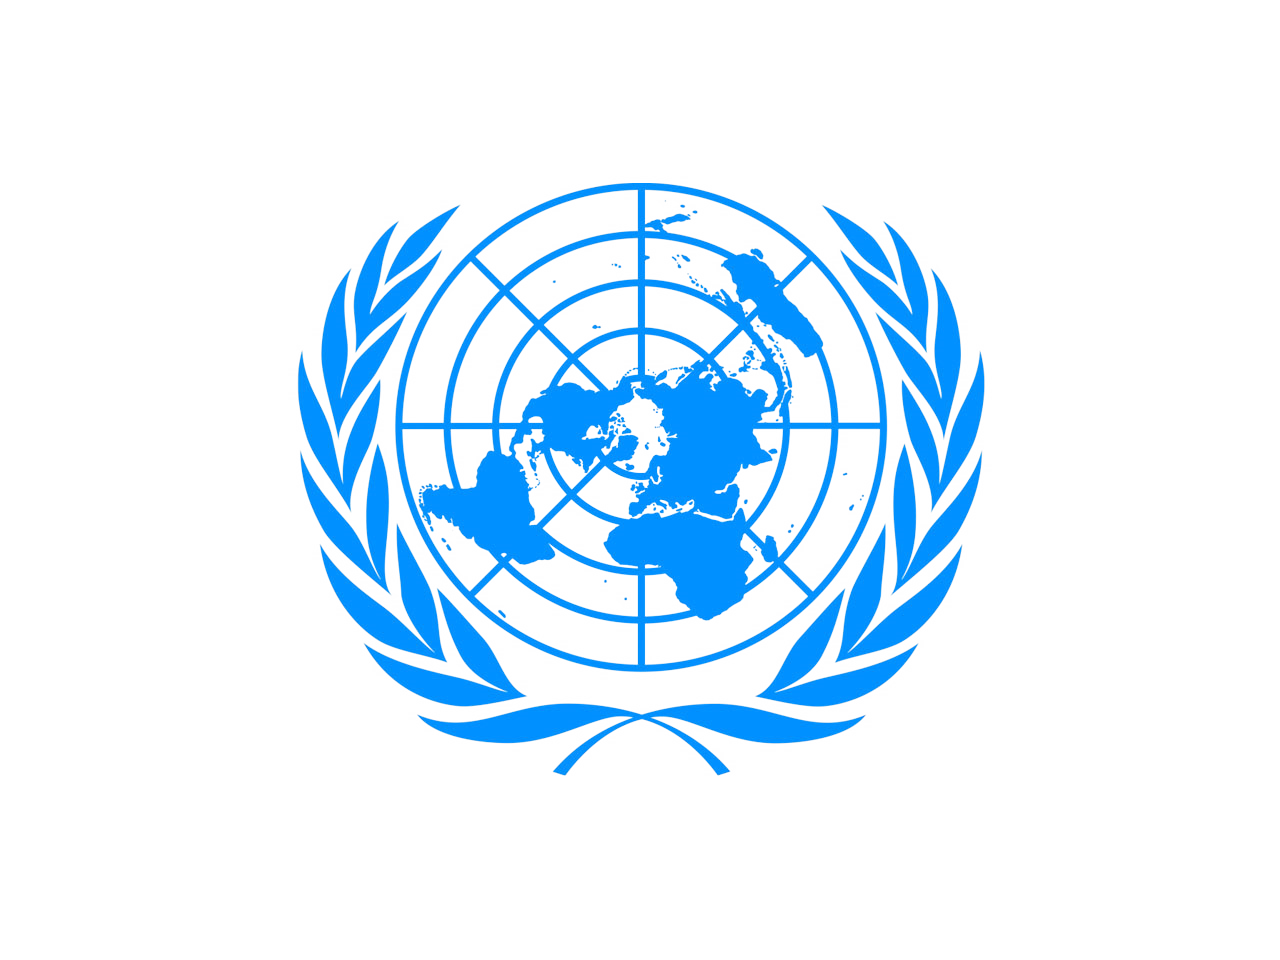 Комиссия по торговле оон. Генеральная Ассамблея ООН флаг. Европейская экономическая комиссия ООН (ЕЭК ООН) цель. Организация Объединенных наций (ООН). Комитет по внутреннему транспорту ЕЭК ООН.